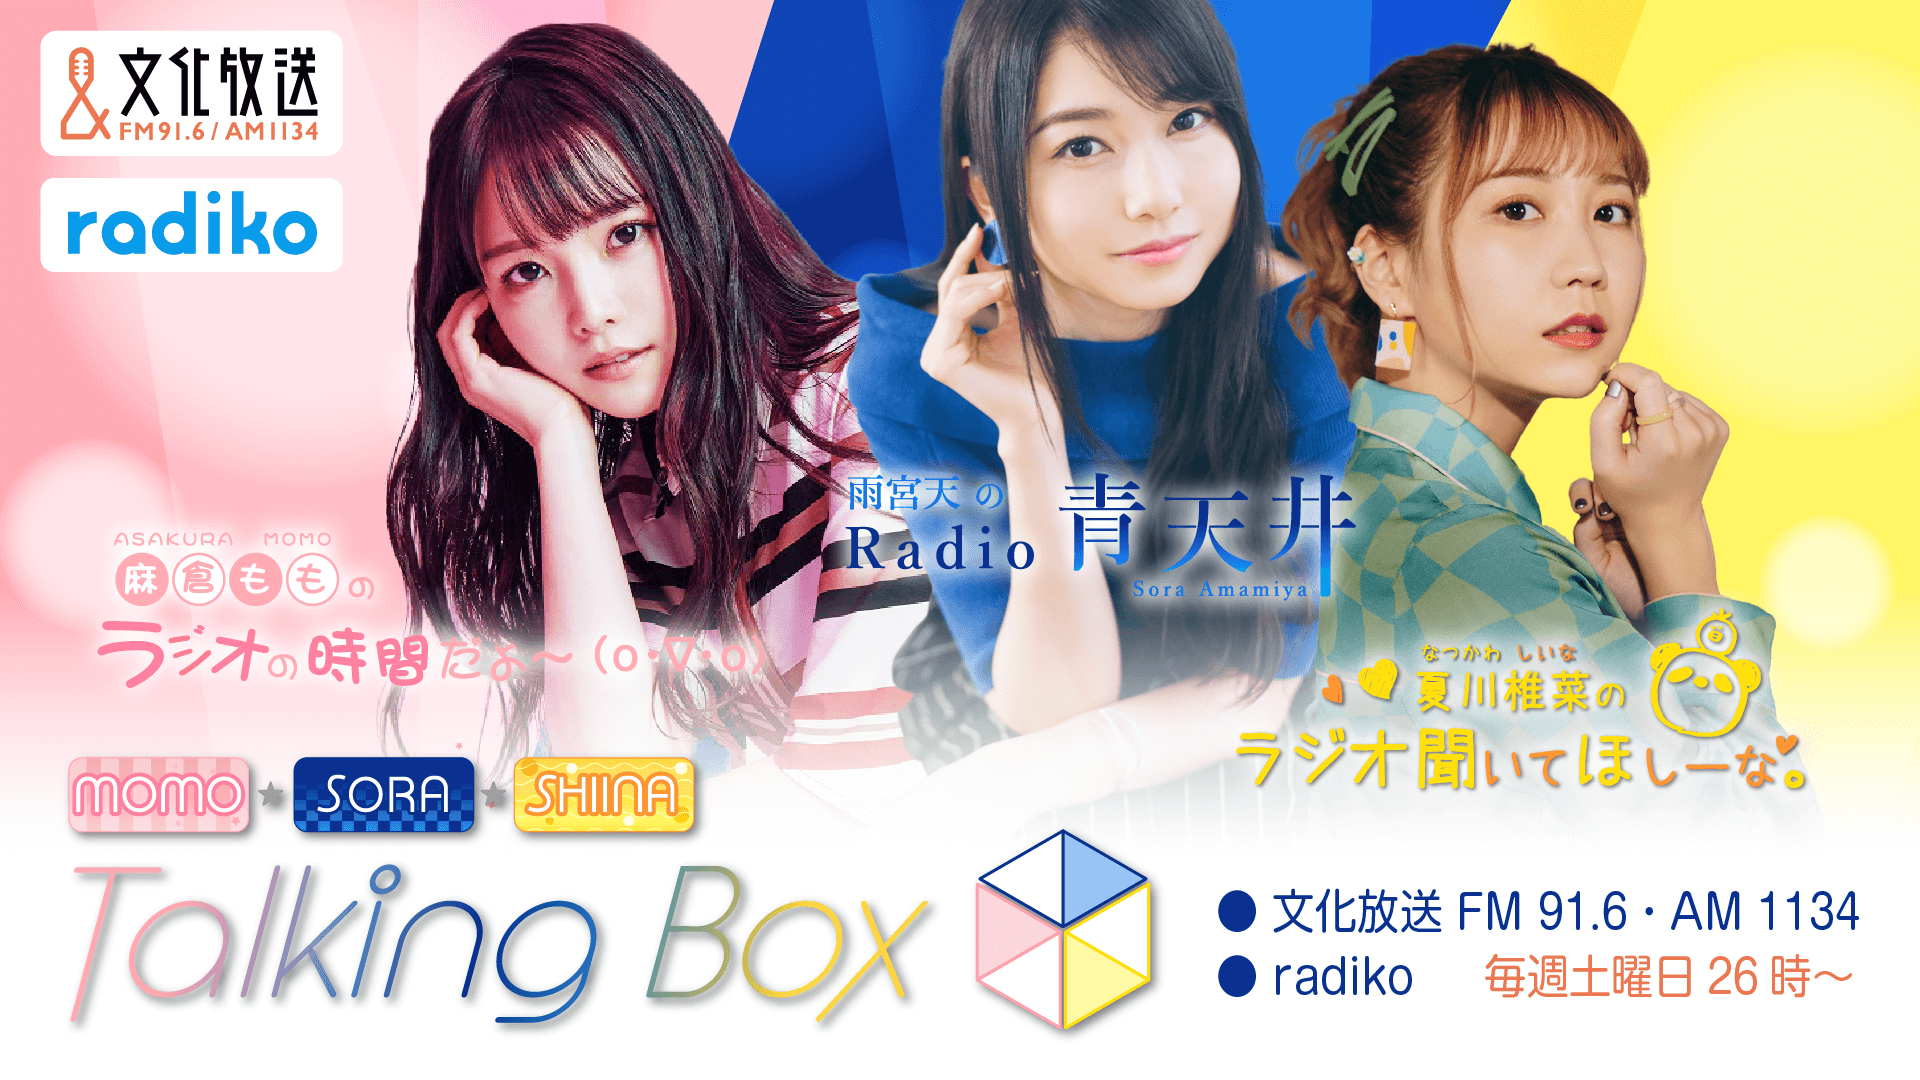 12月24日の放送は、雨宮天さん＆夏川椎菜さんによる２人回をお届け！『MOMO・SORA・SHIINA Talking Box』